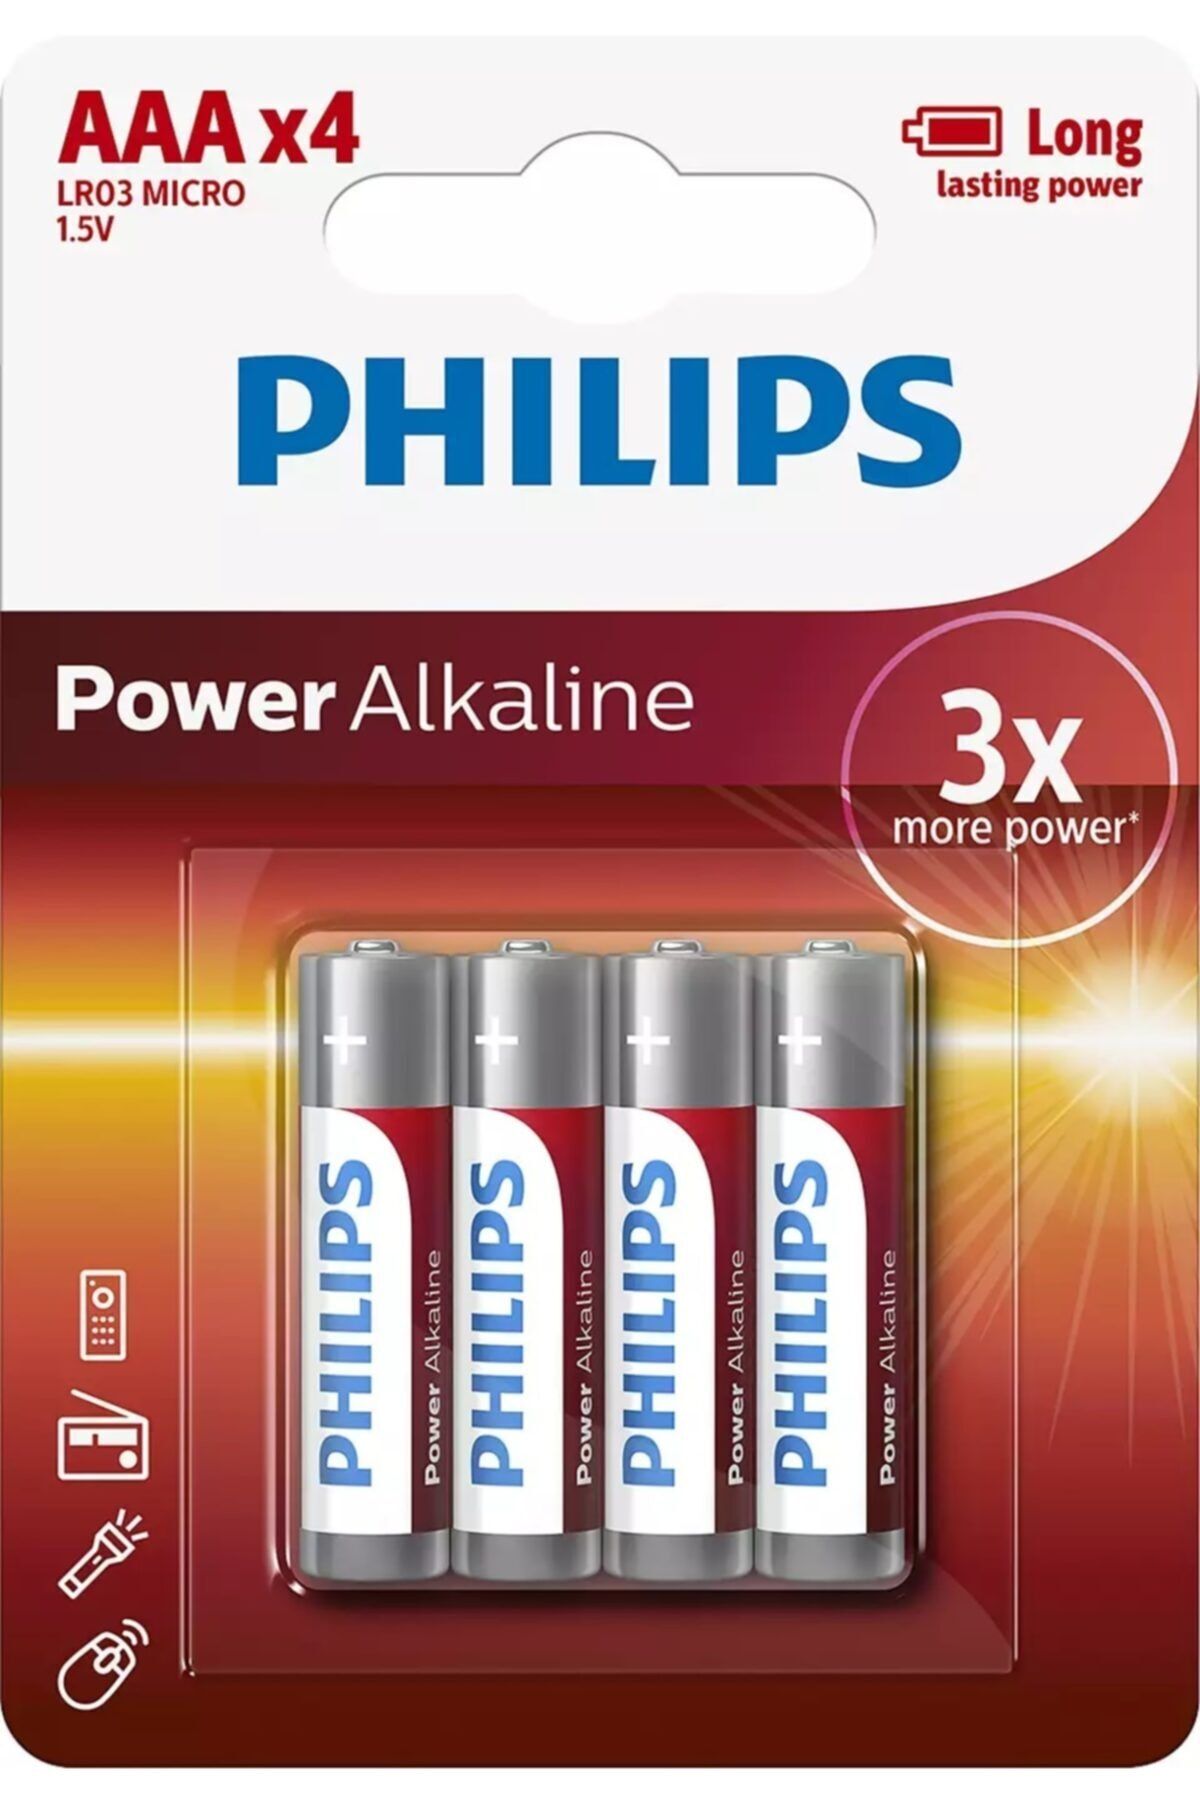 Philips Power Alkalin AAA X4